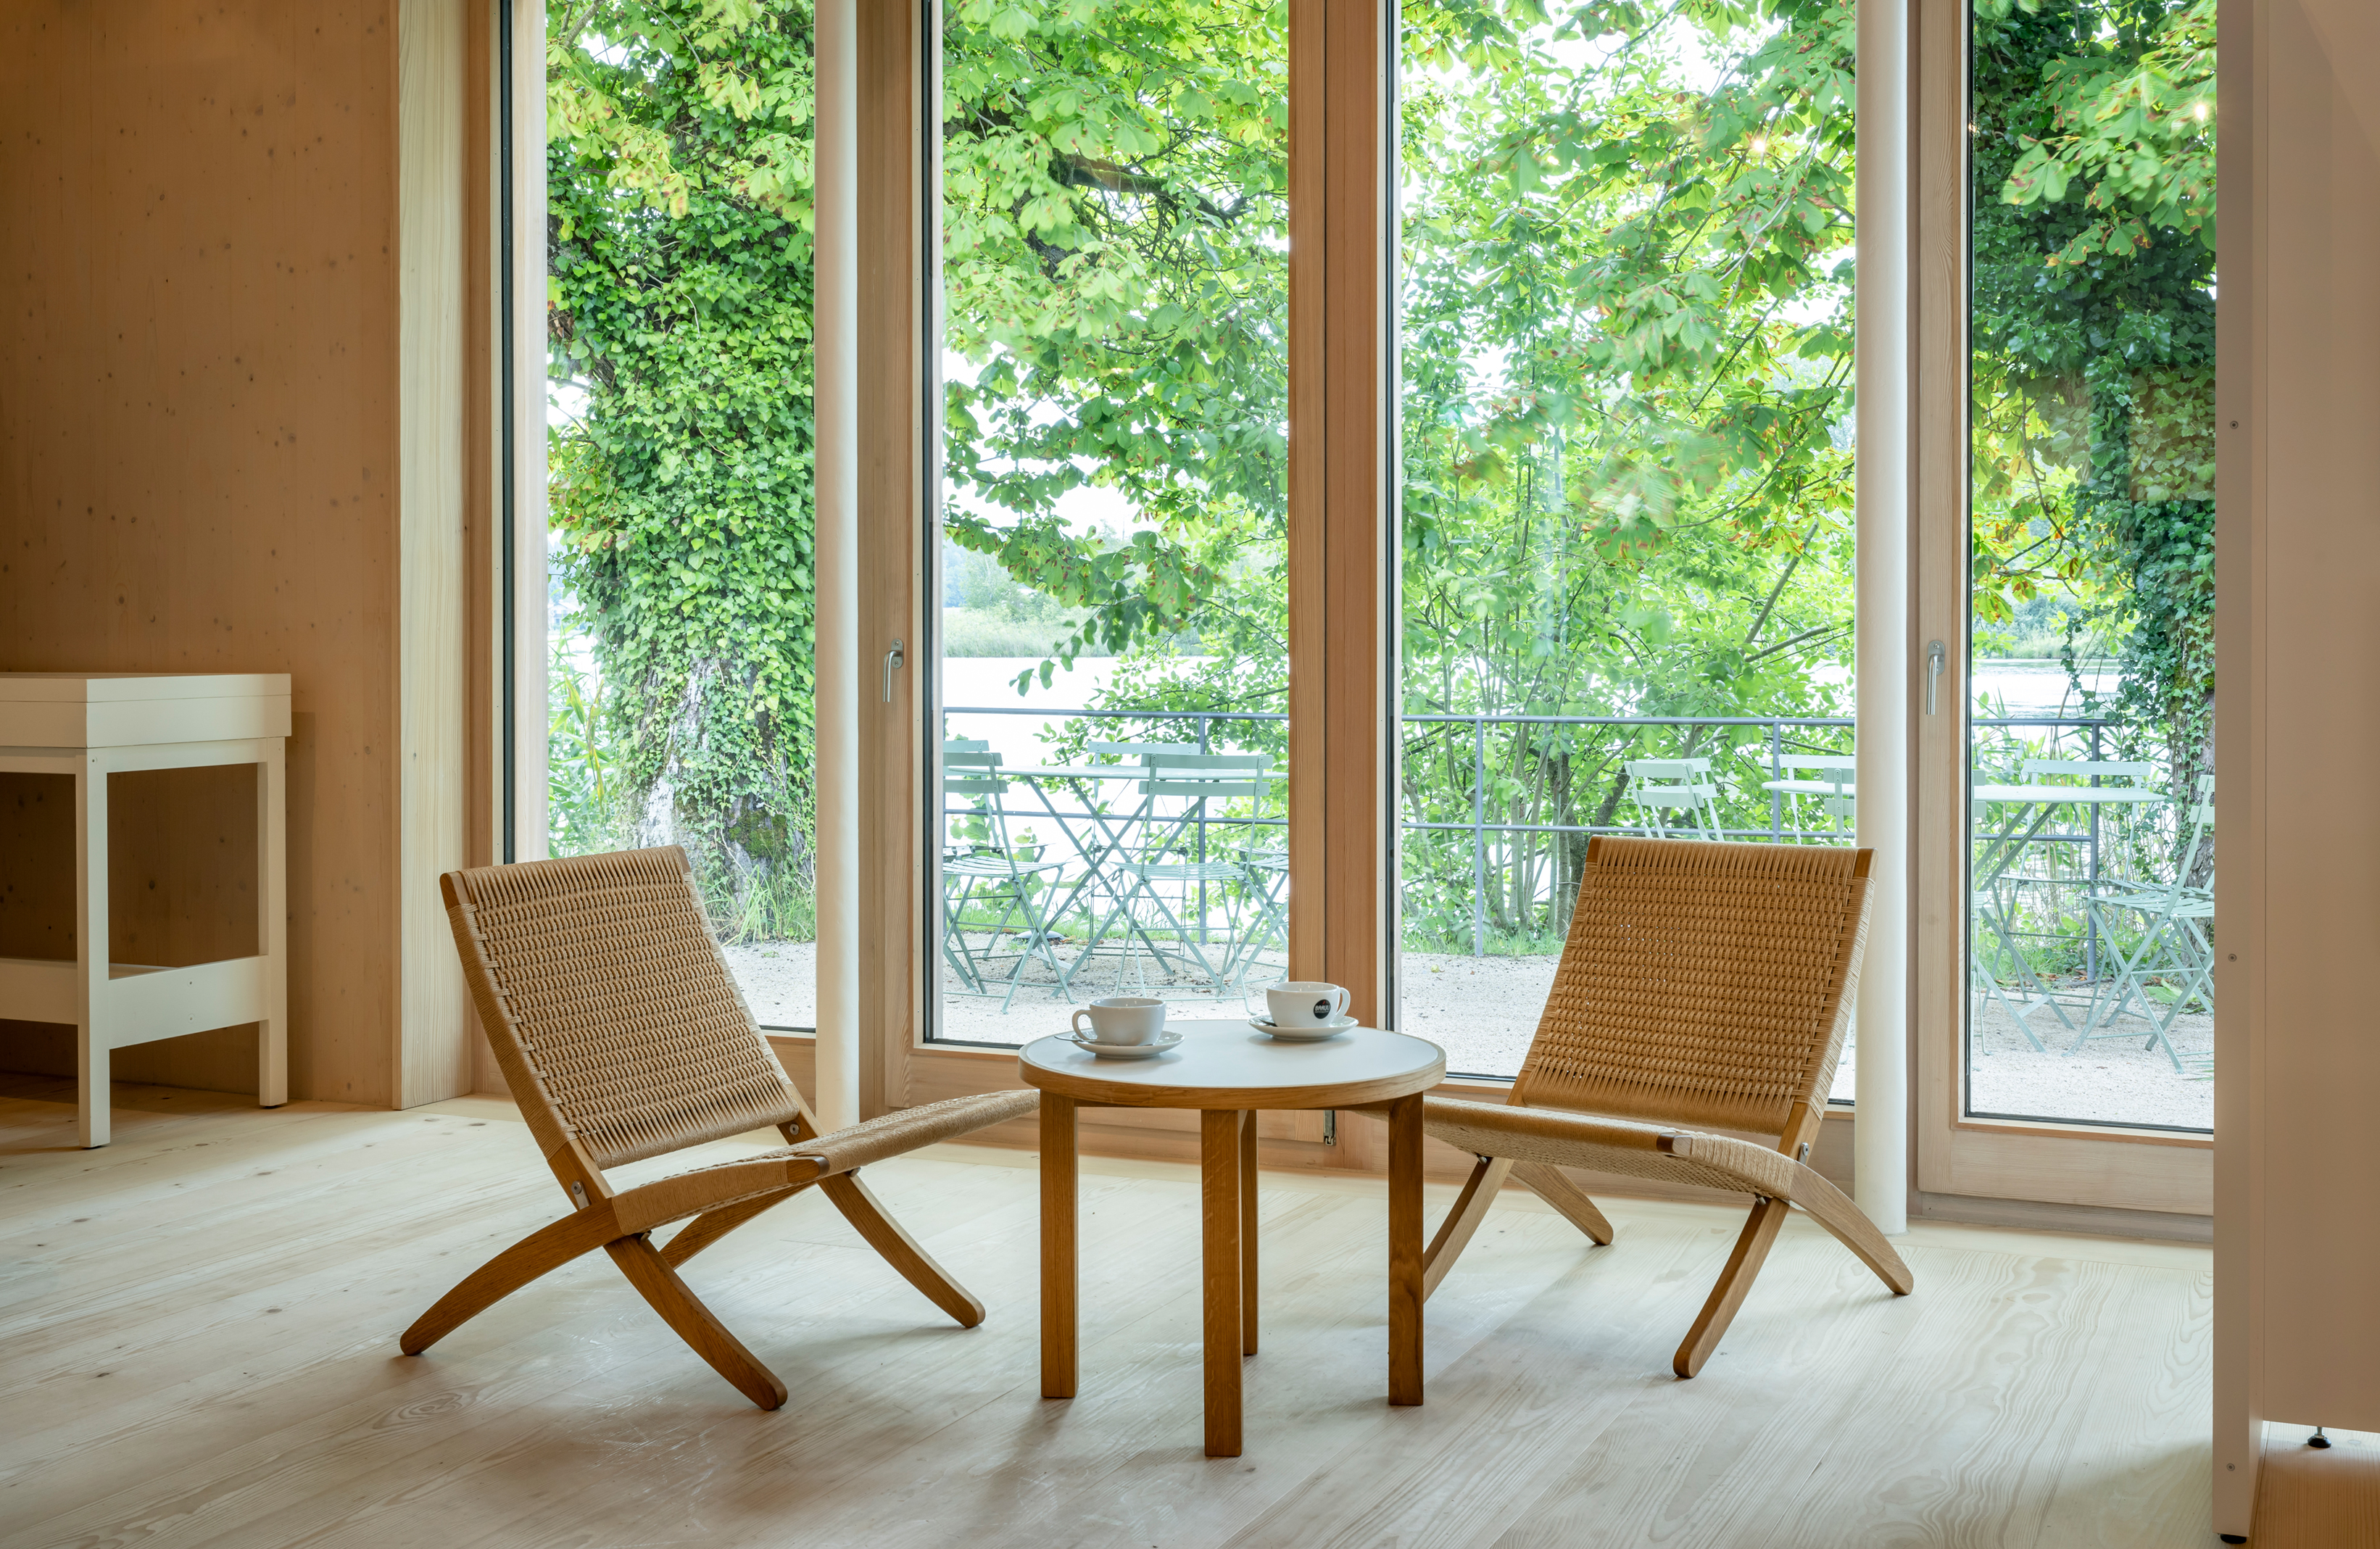 Sitzgruppe aus hellem Holz und Korb mit zwei Stühlen und einem kleinen Tisch vor bodentiefen großen Fenstern, draußen grünes Laub